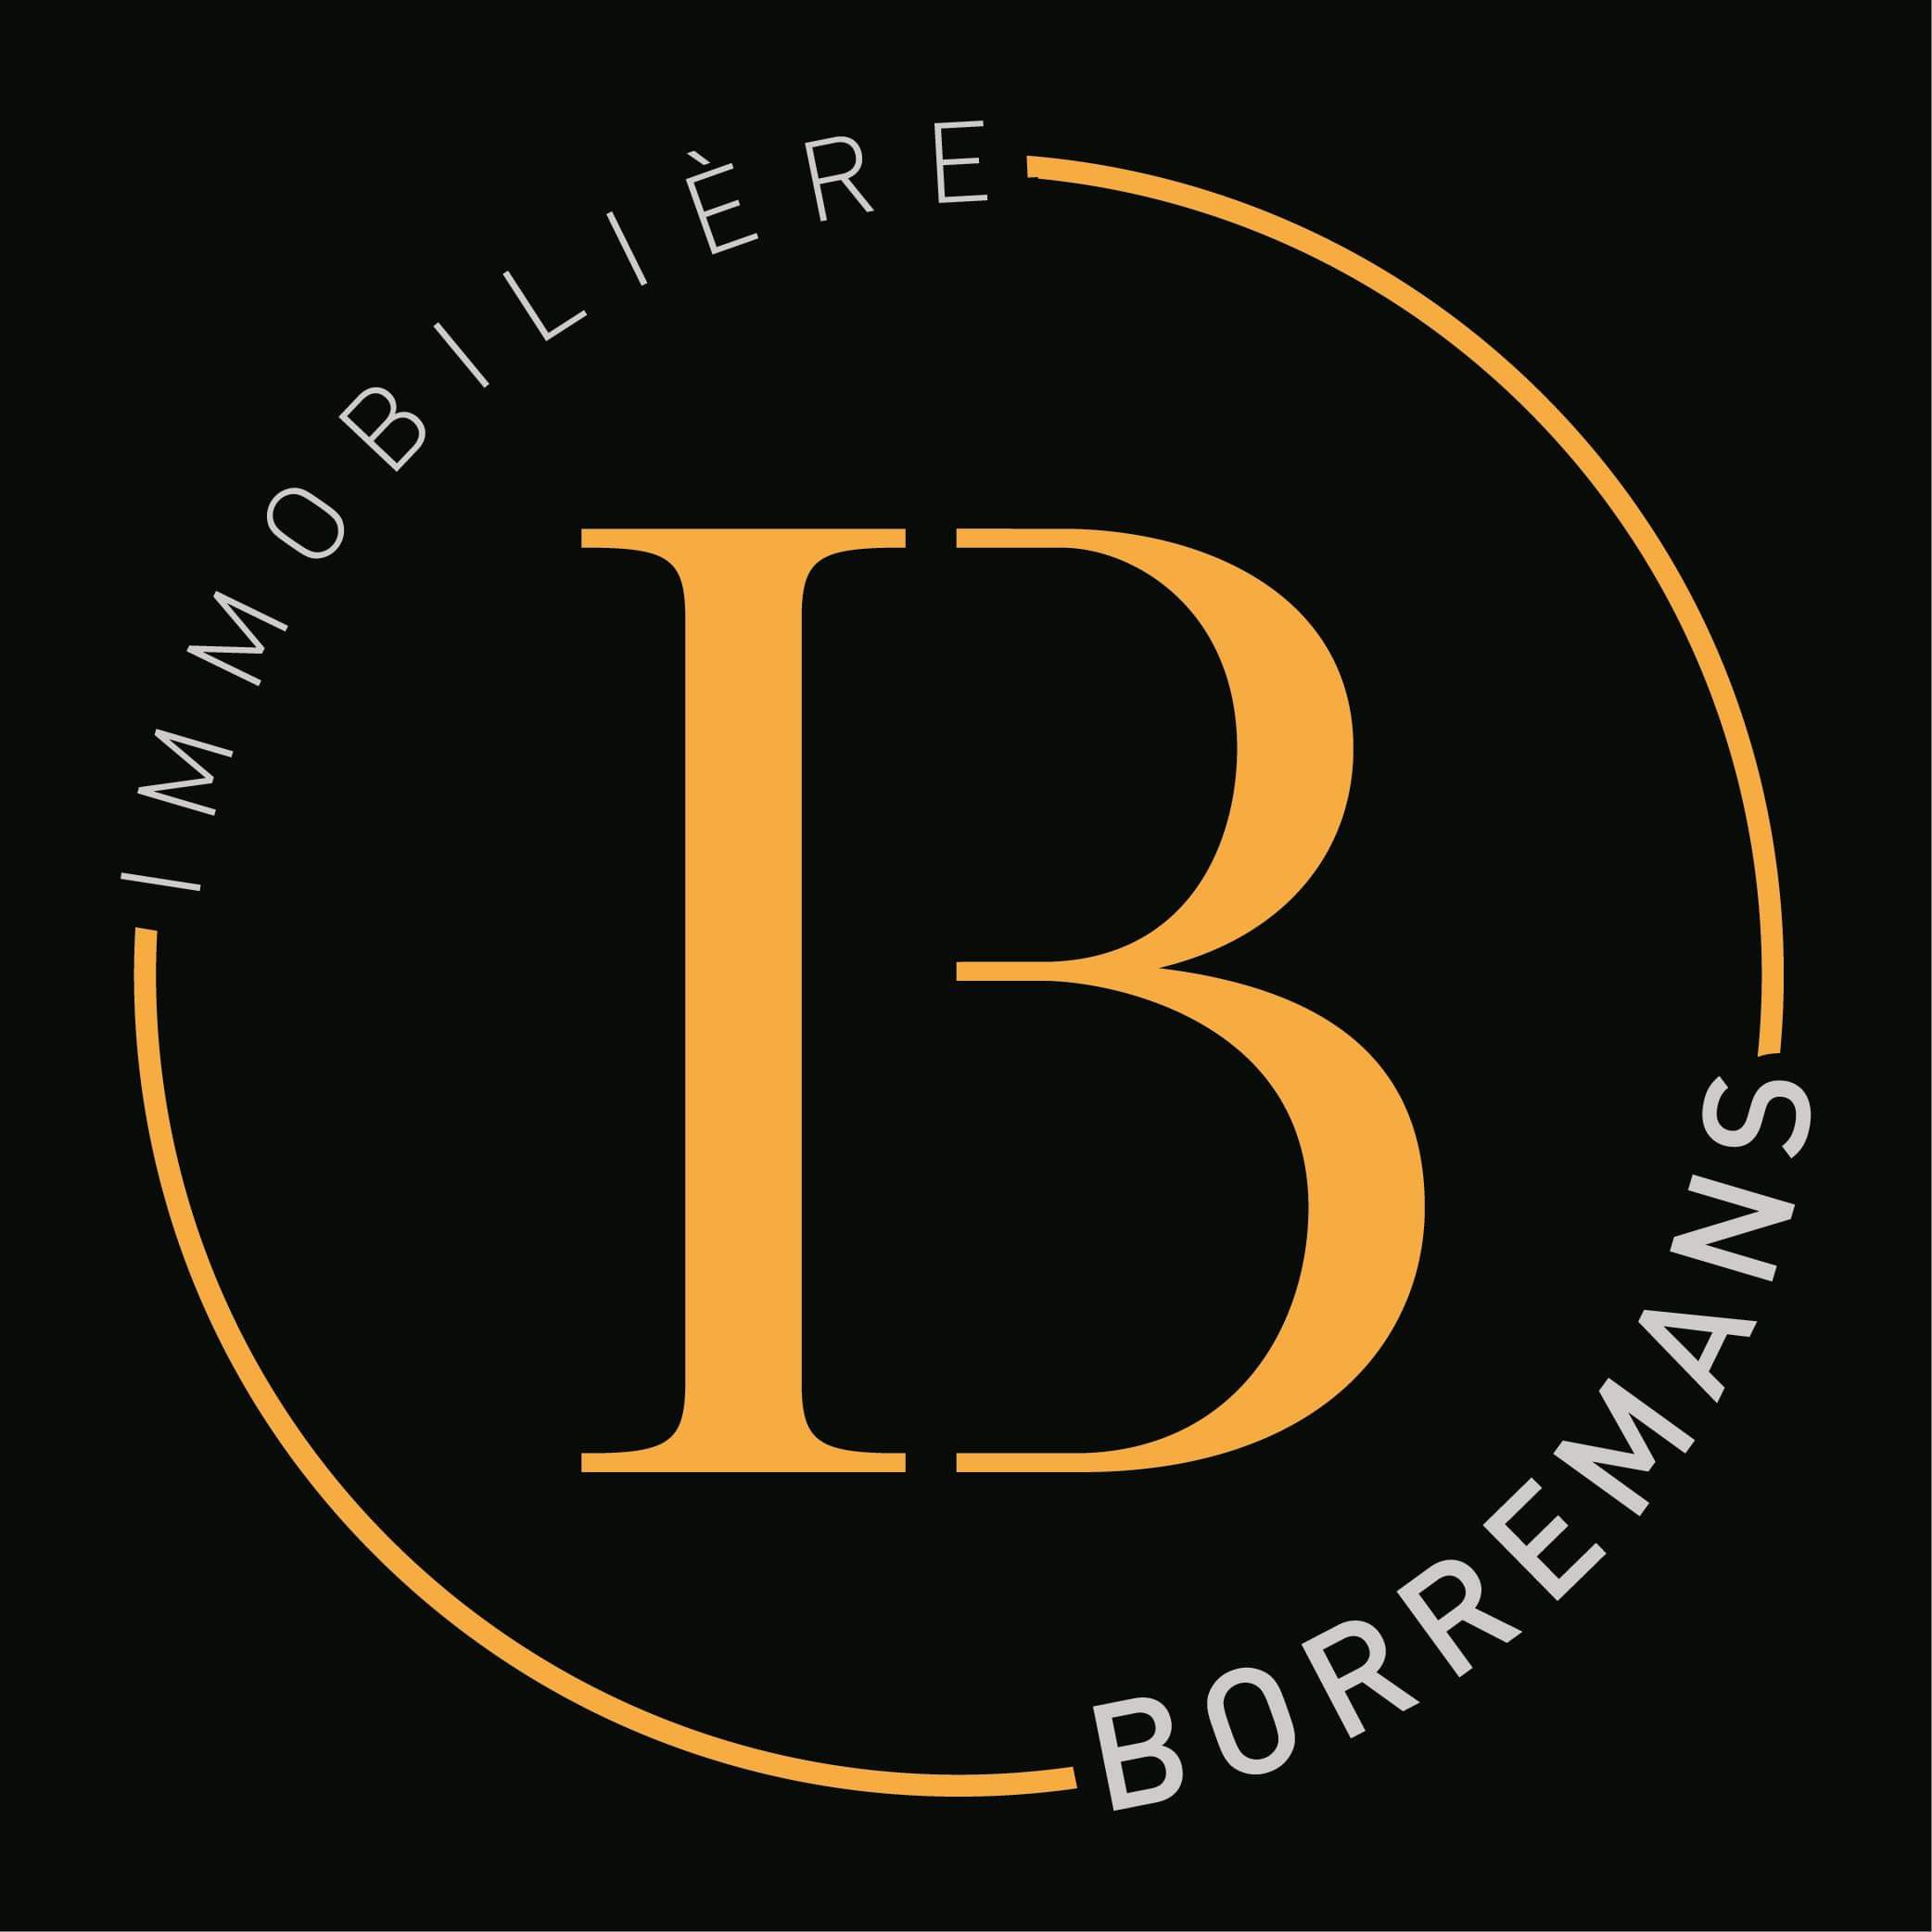 Logo de l'agence immobilière Borremans